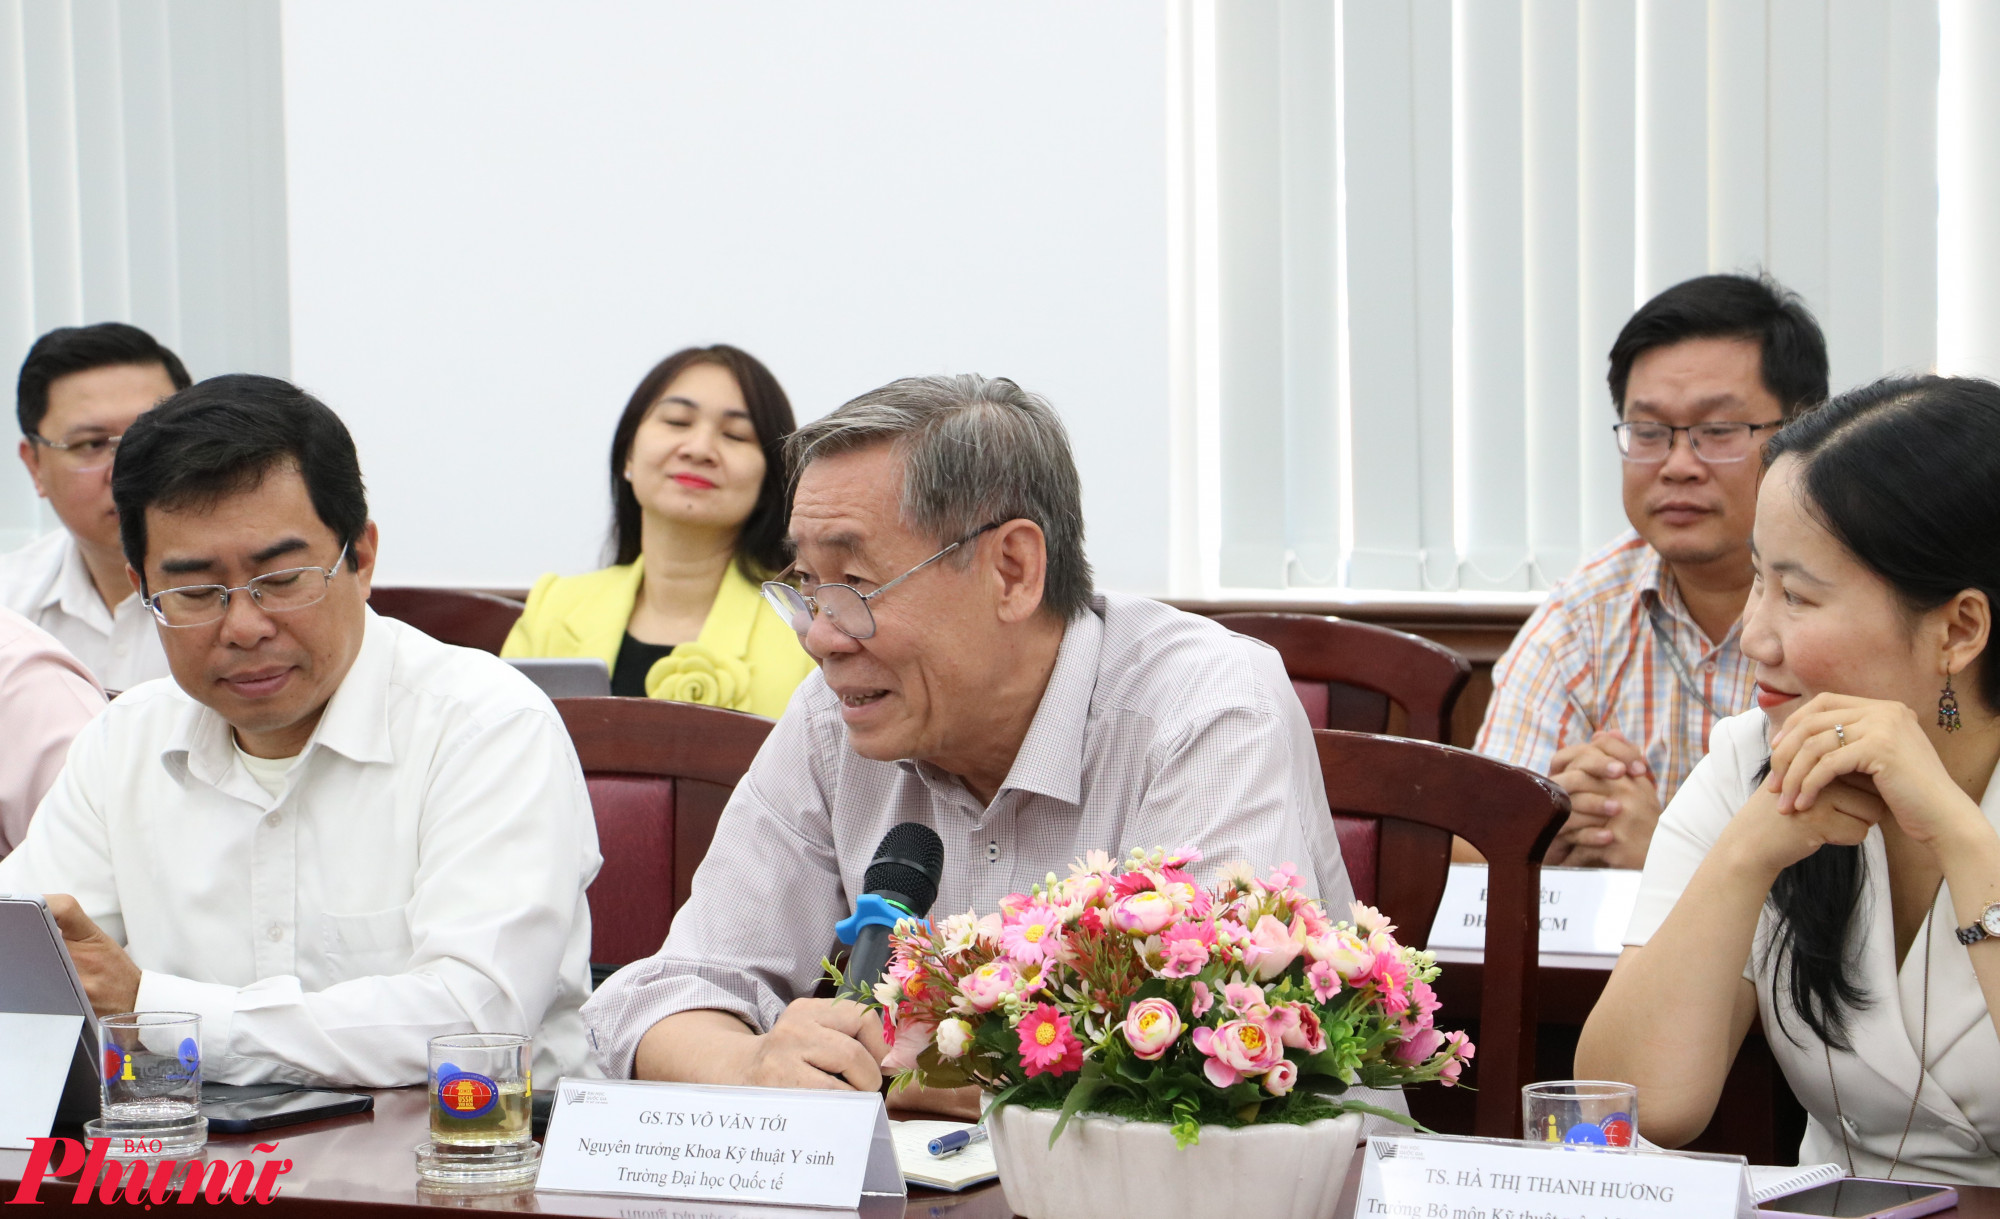 Giáo sư Ngô Văn Tới - Nguyên trưởng khoa Kỹ thuật Y sinh, Trường đại học Quốc tế, Đại học Quốc gia TPHCM - ủng hộ chương trình VNU350